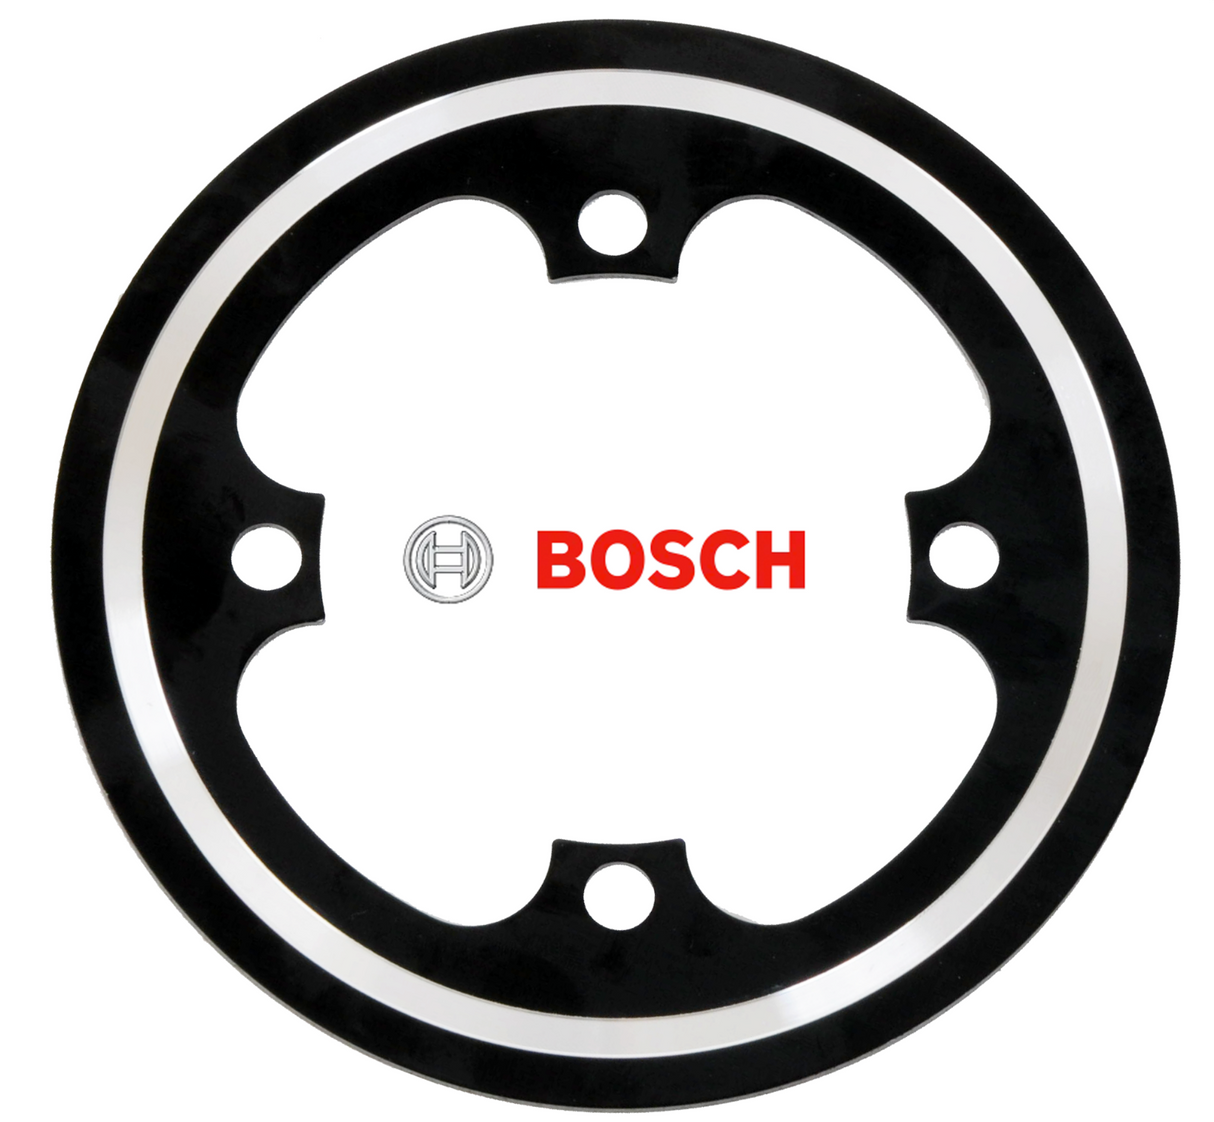 Bosch E-Bike 38T Chain Guard / Chain Wheel Protector - CNC Alloy - Black/Silver - Sportandleisure.com (6968088920218)